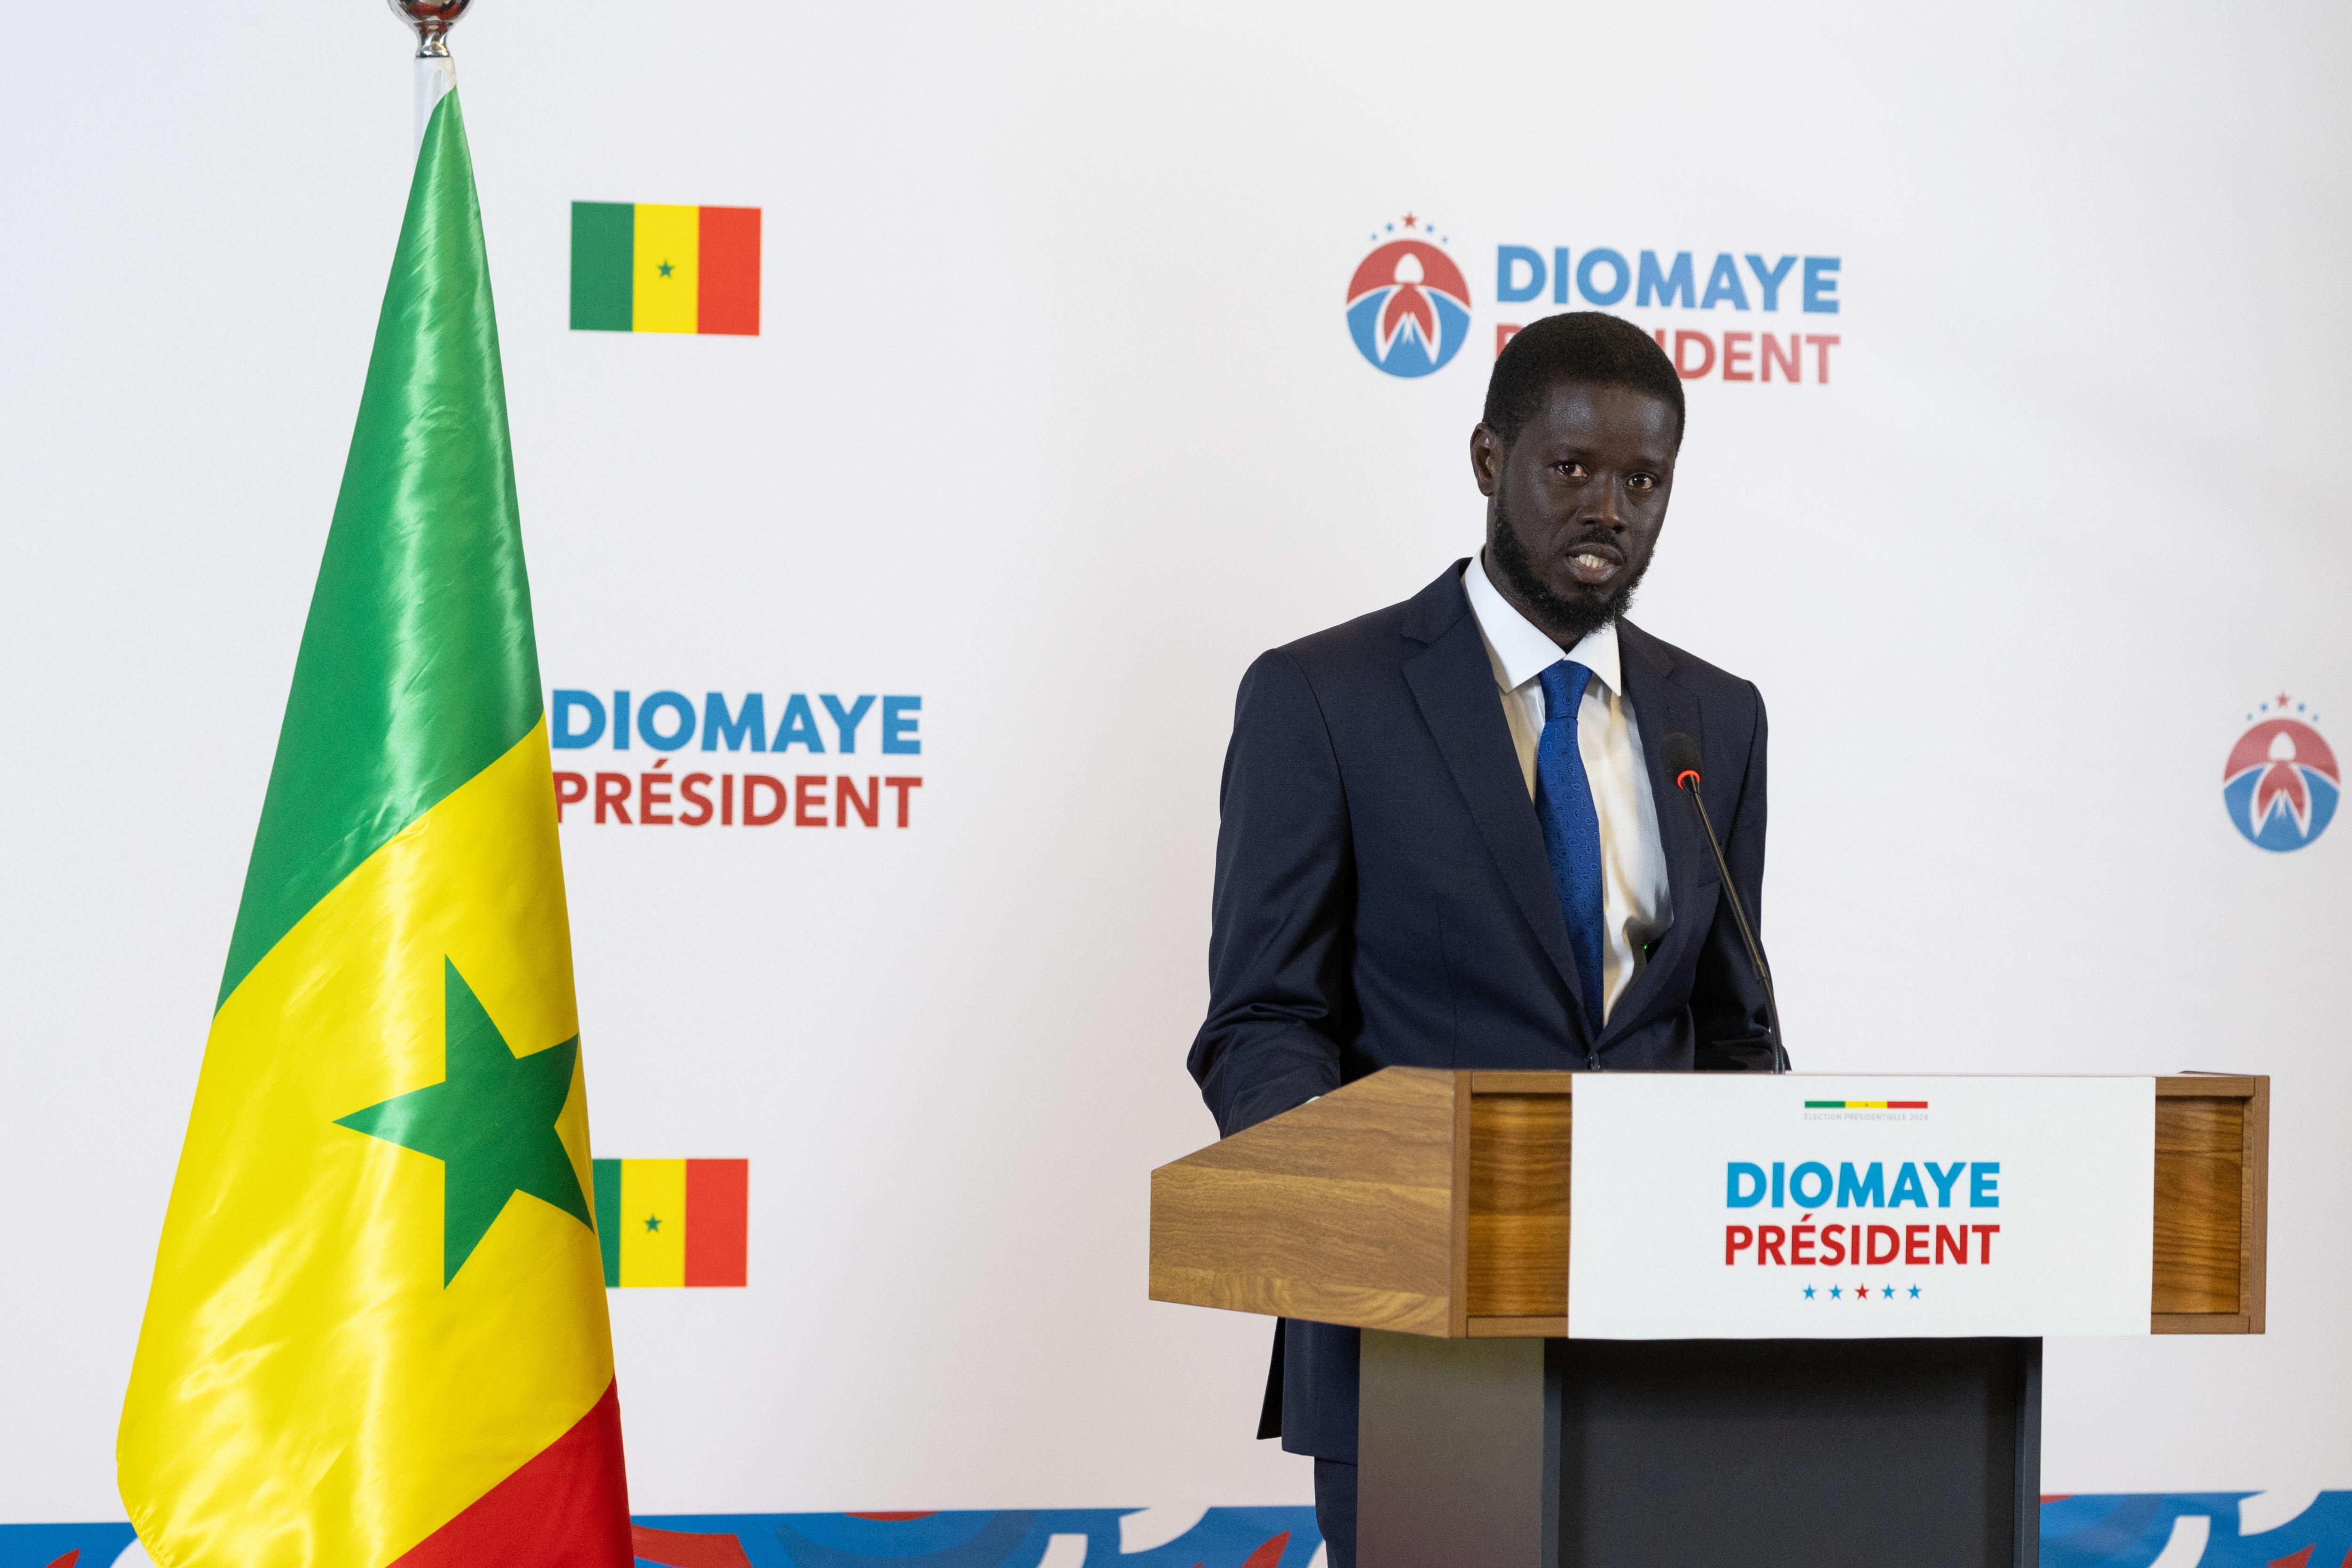 Bassirou Diomaye Faye, behin-behineko emaitzen arabera Senegalgo presidente izango dena, bart egindako agerraldian. JEROME FAVRE / EFE